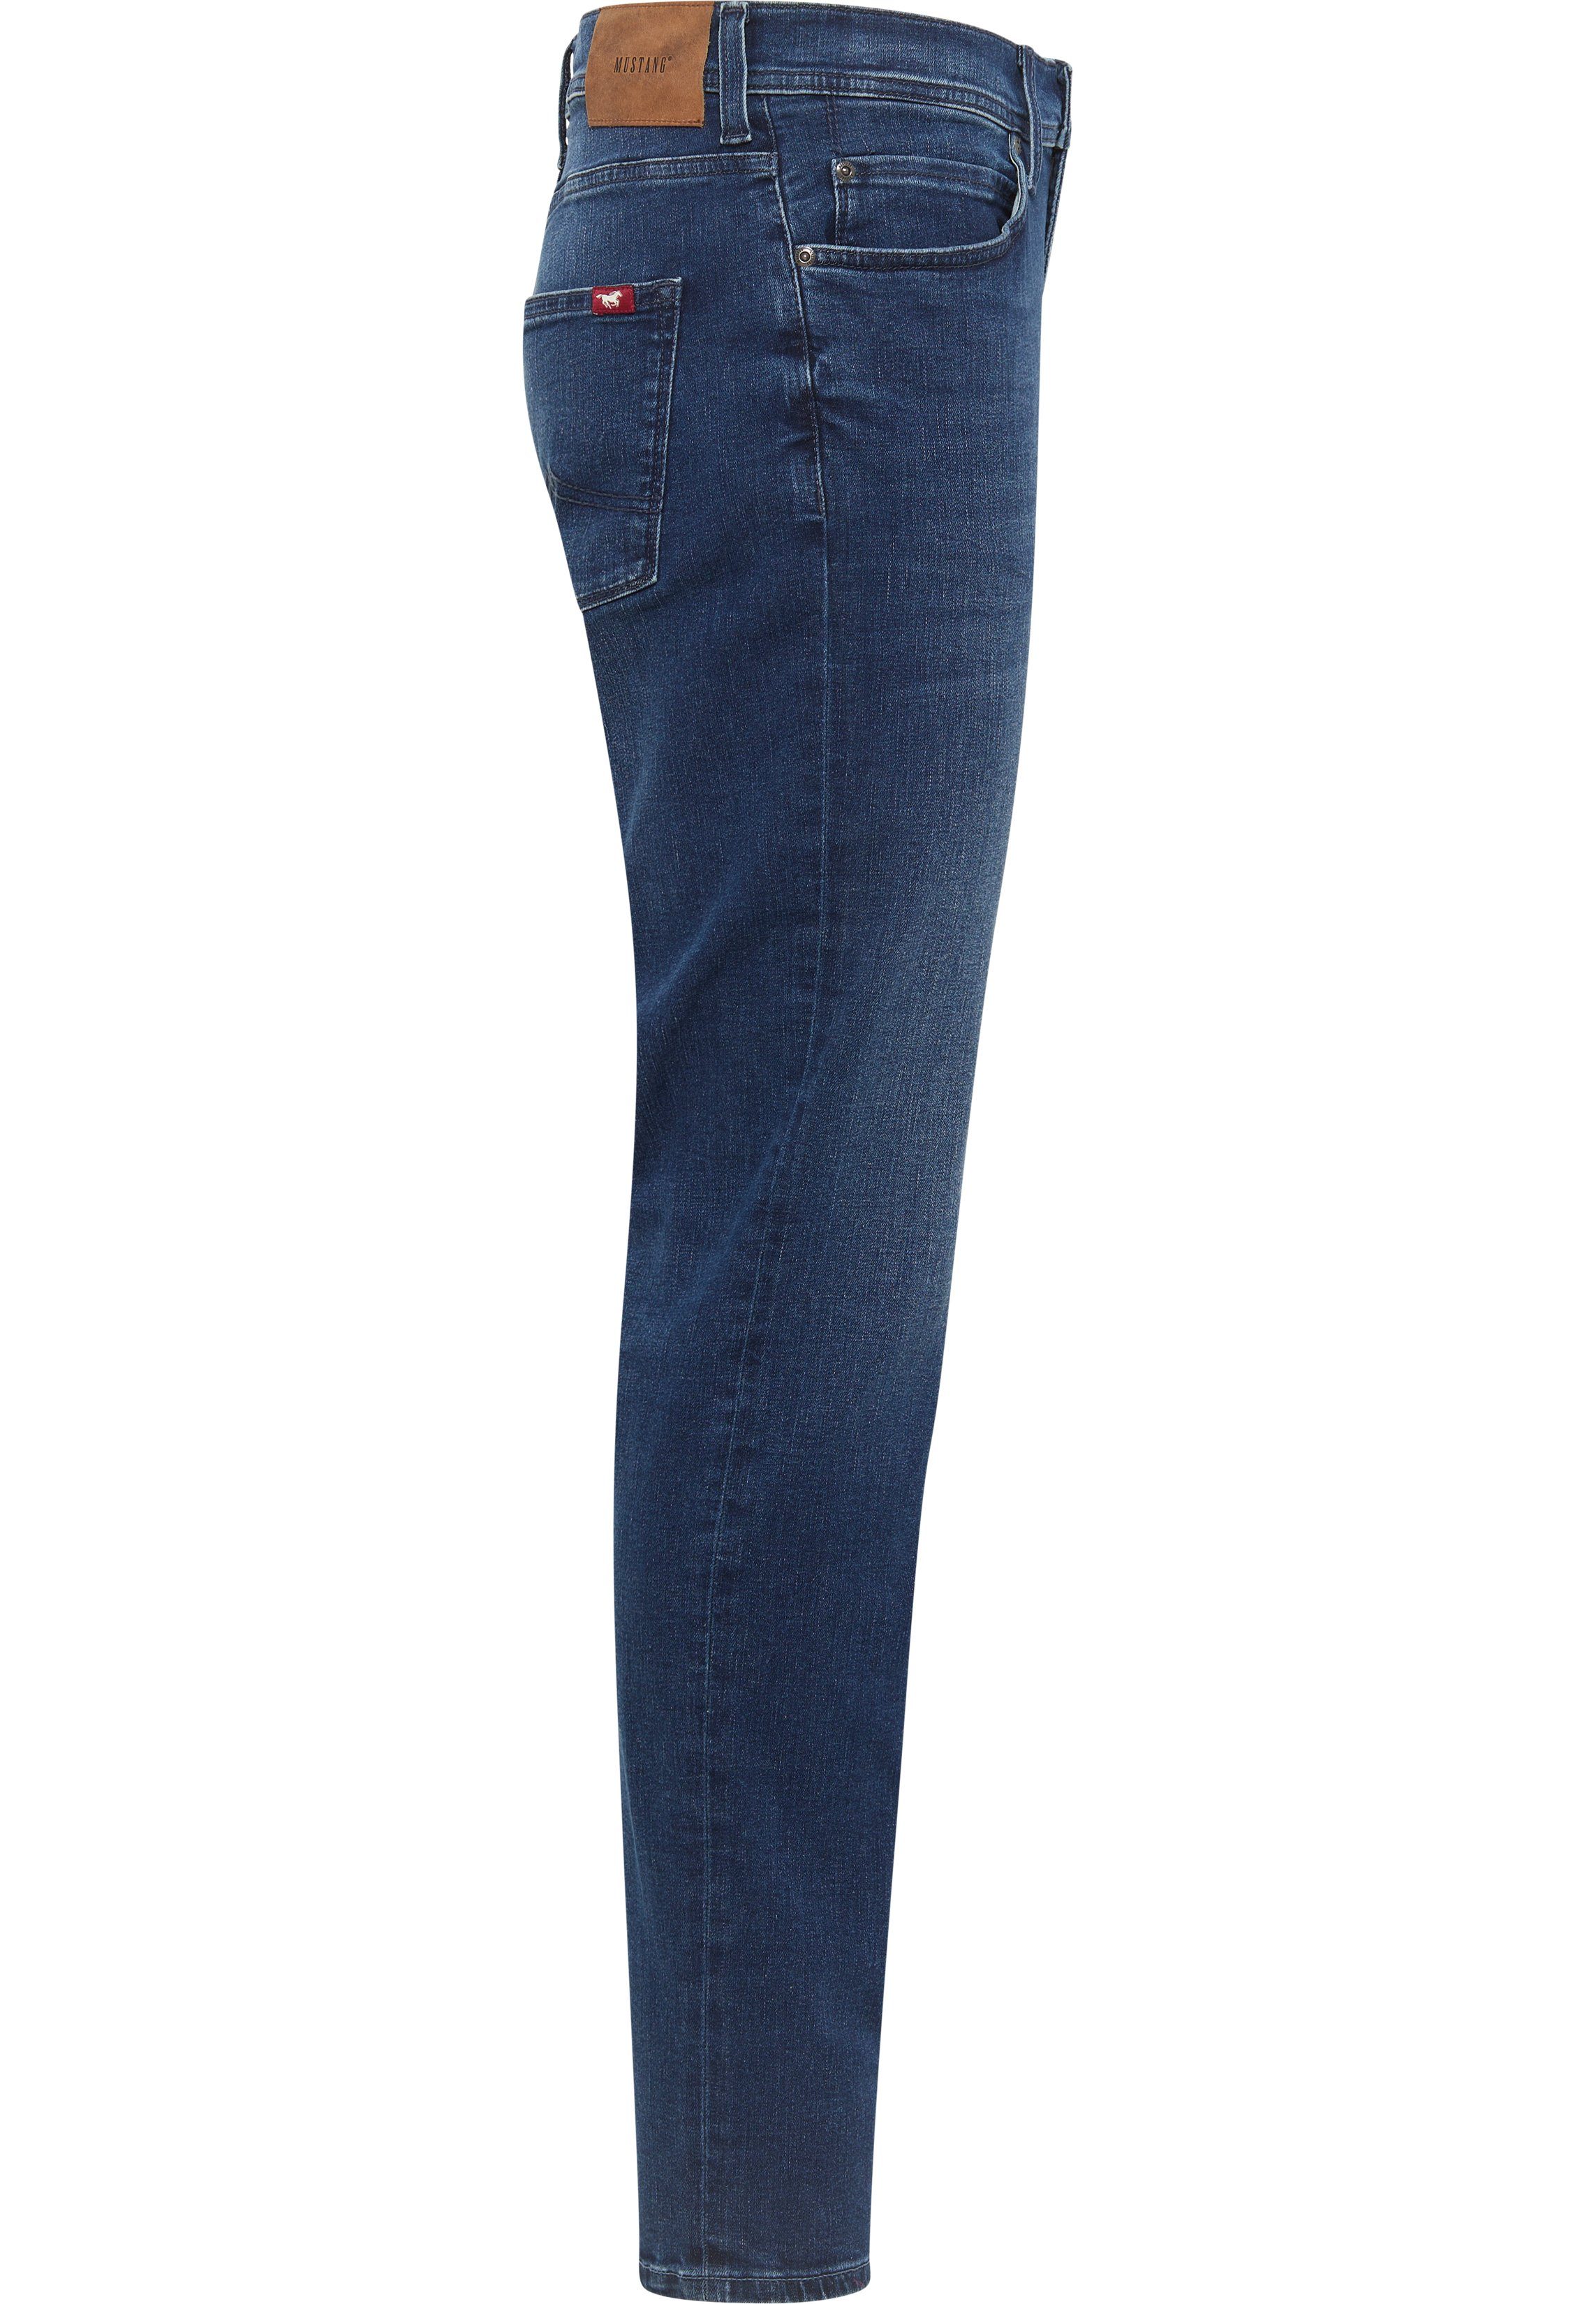 Slim-fit-Jeans Vegas Style blau-5000982 MUSTANG